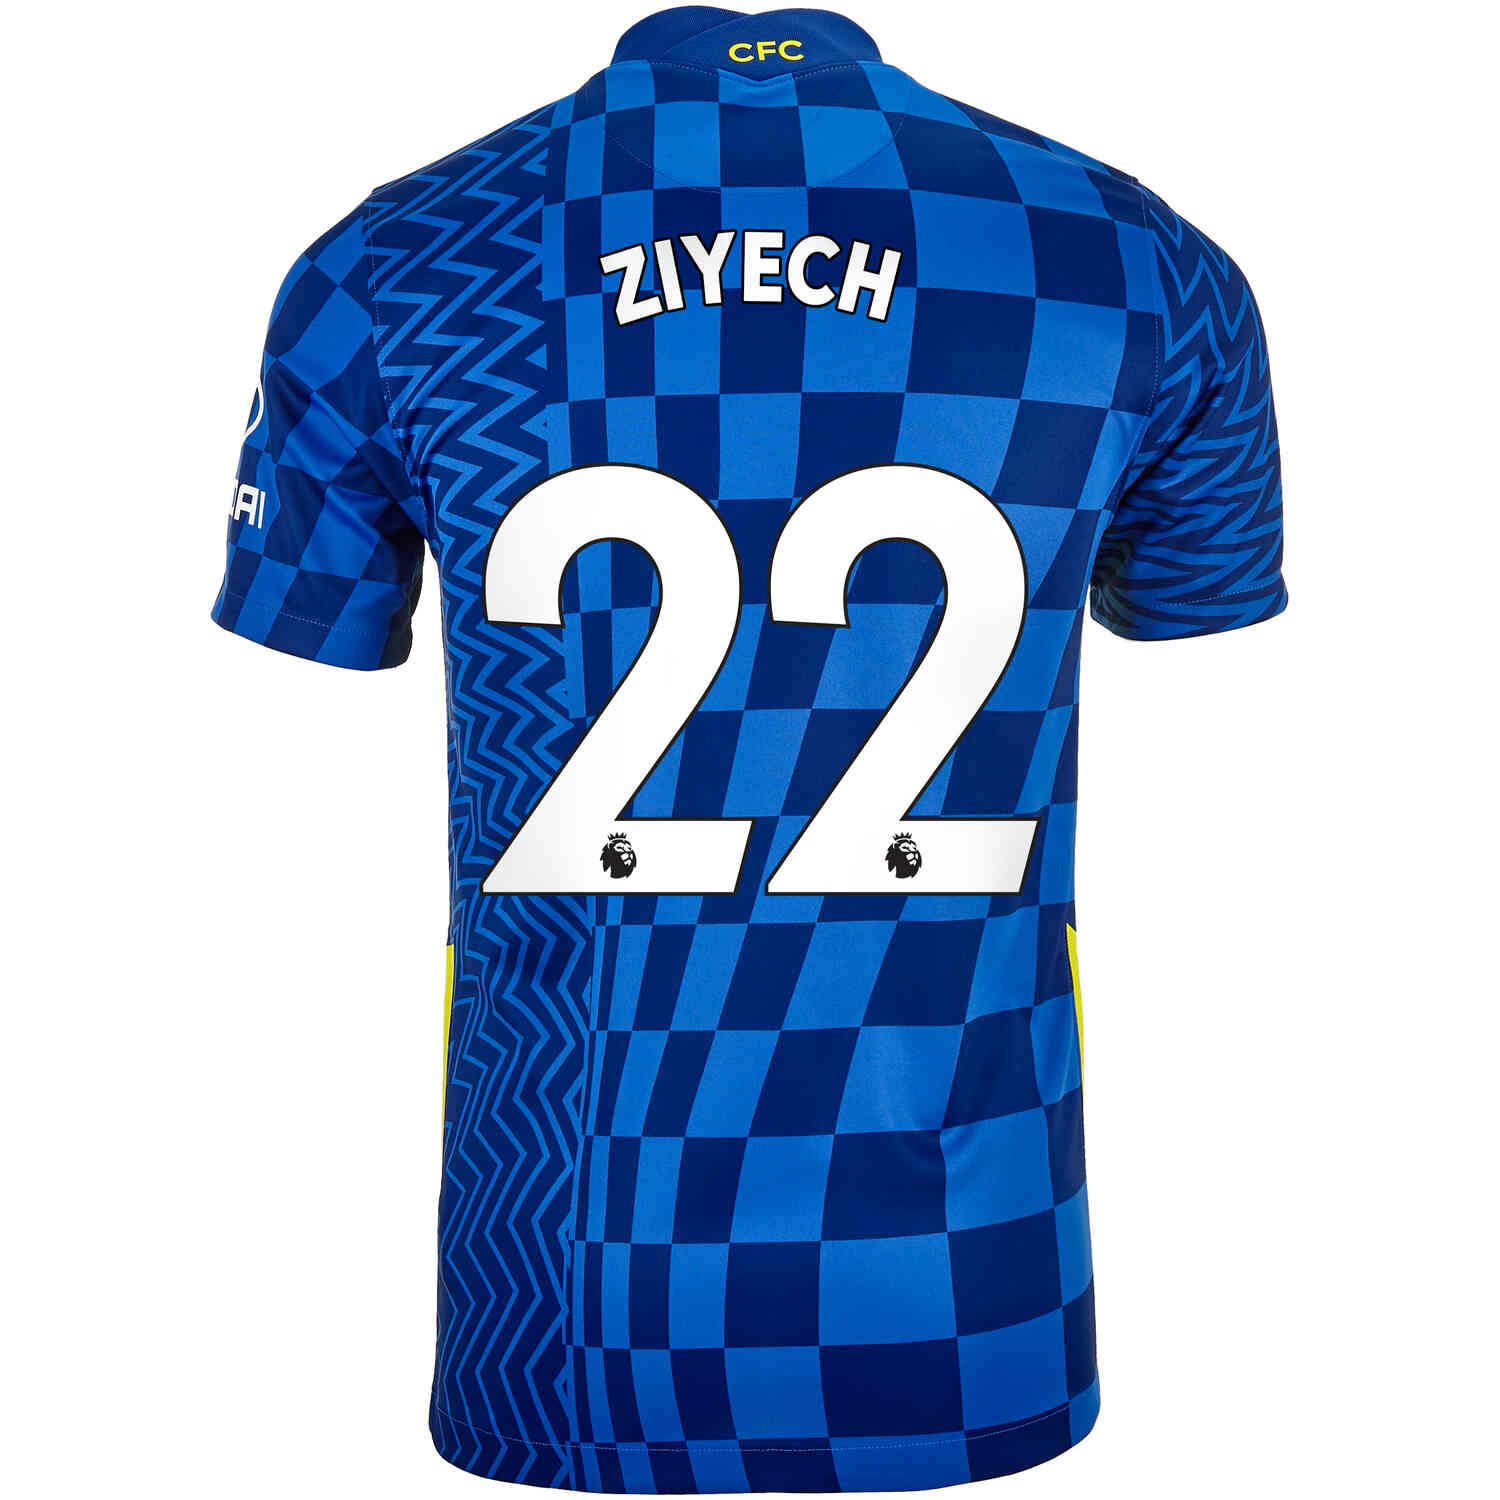 2021/22 Kids Nike Hakim Ziyech Chelsea Home Jersey - SoccerPro